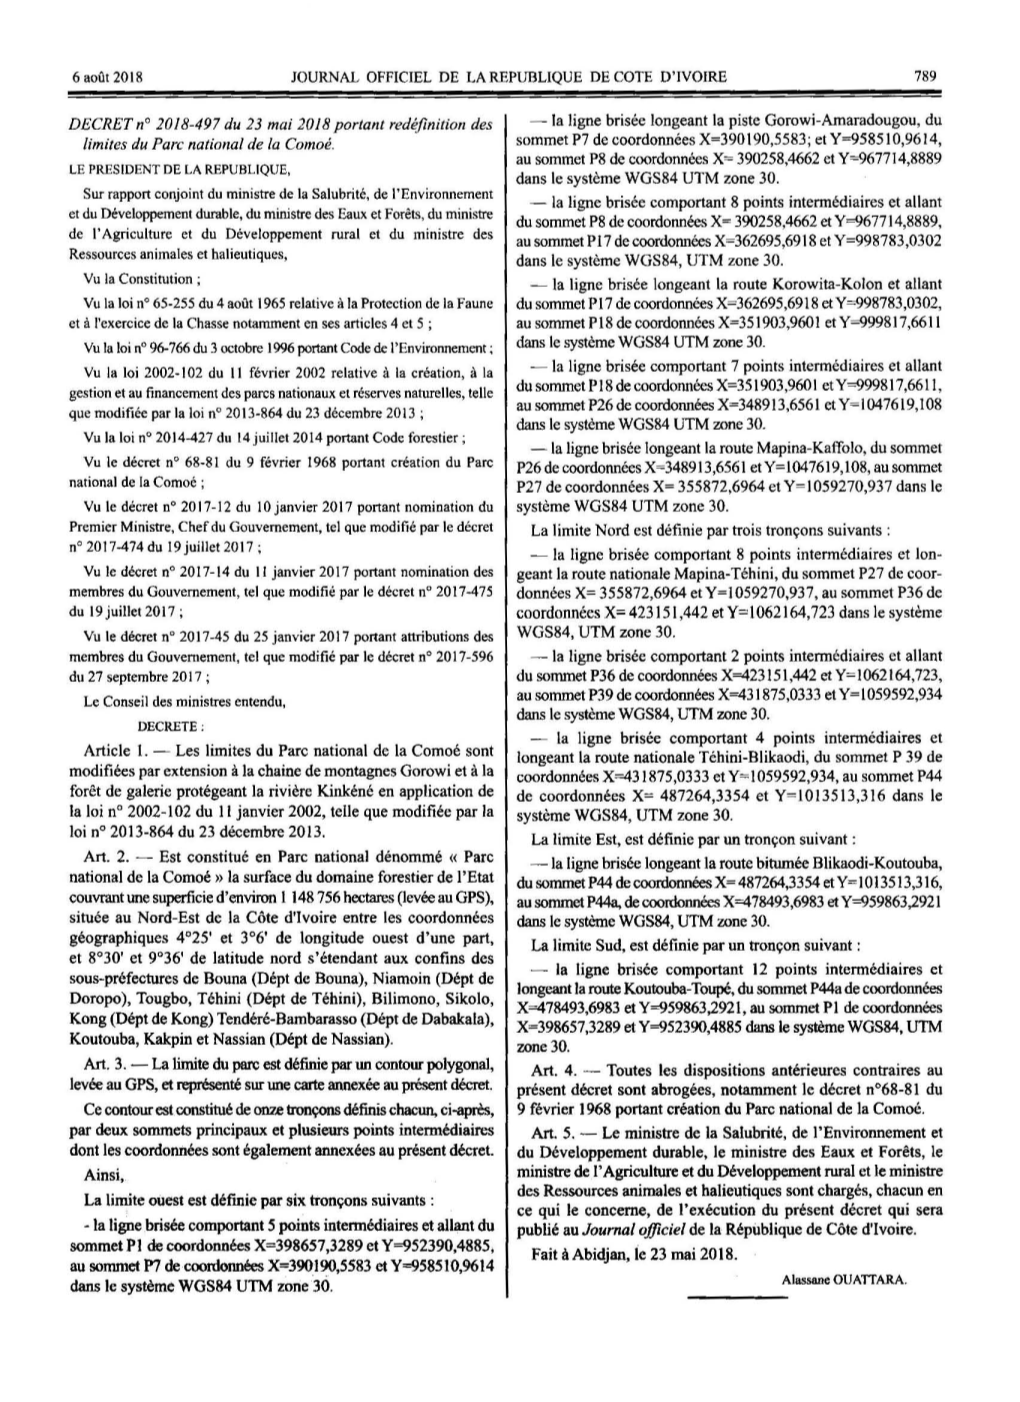 2018-05-23 D2018-497 Limites PN Comoé.Pdf